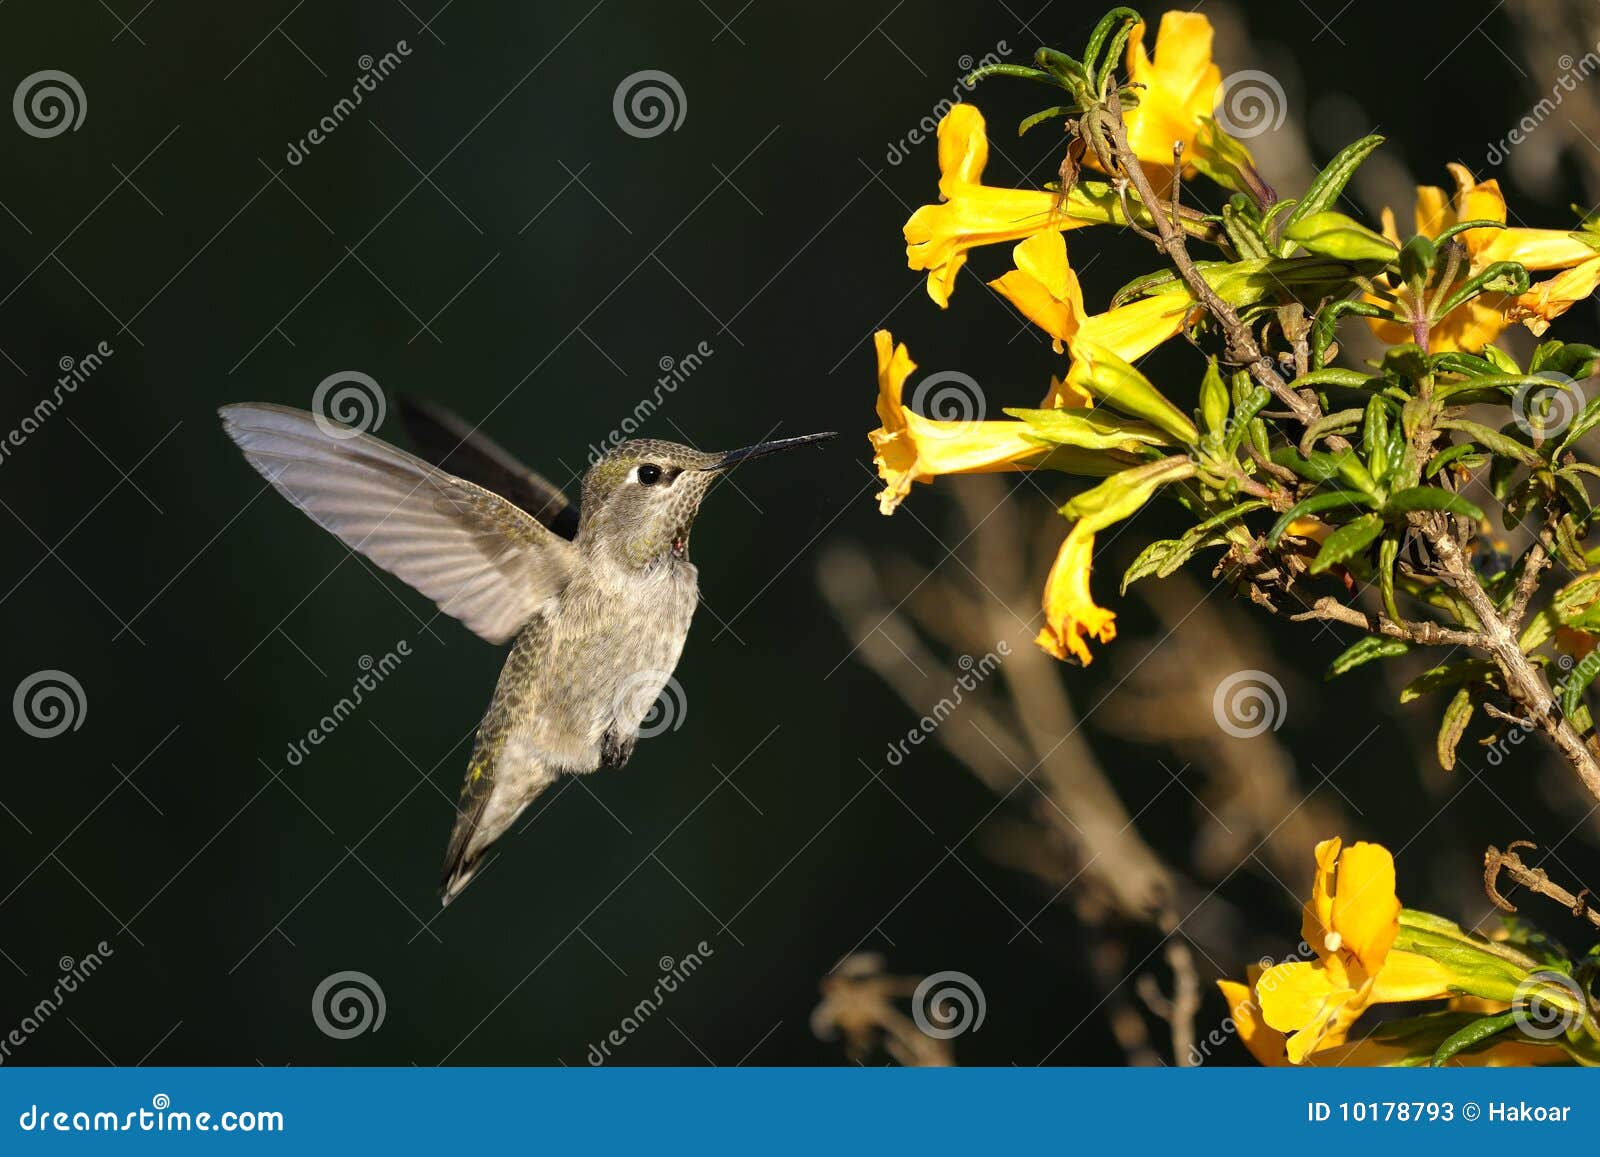 anna's hummingbird, calypte anna